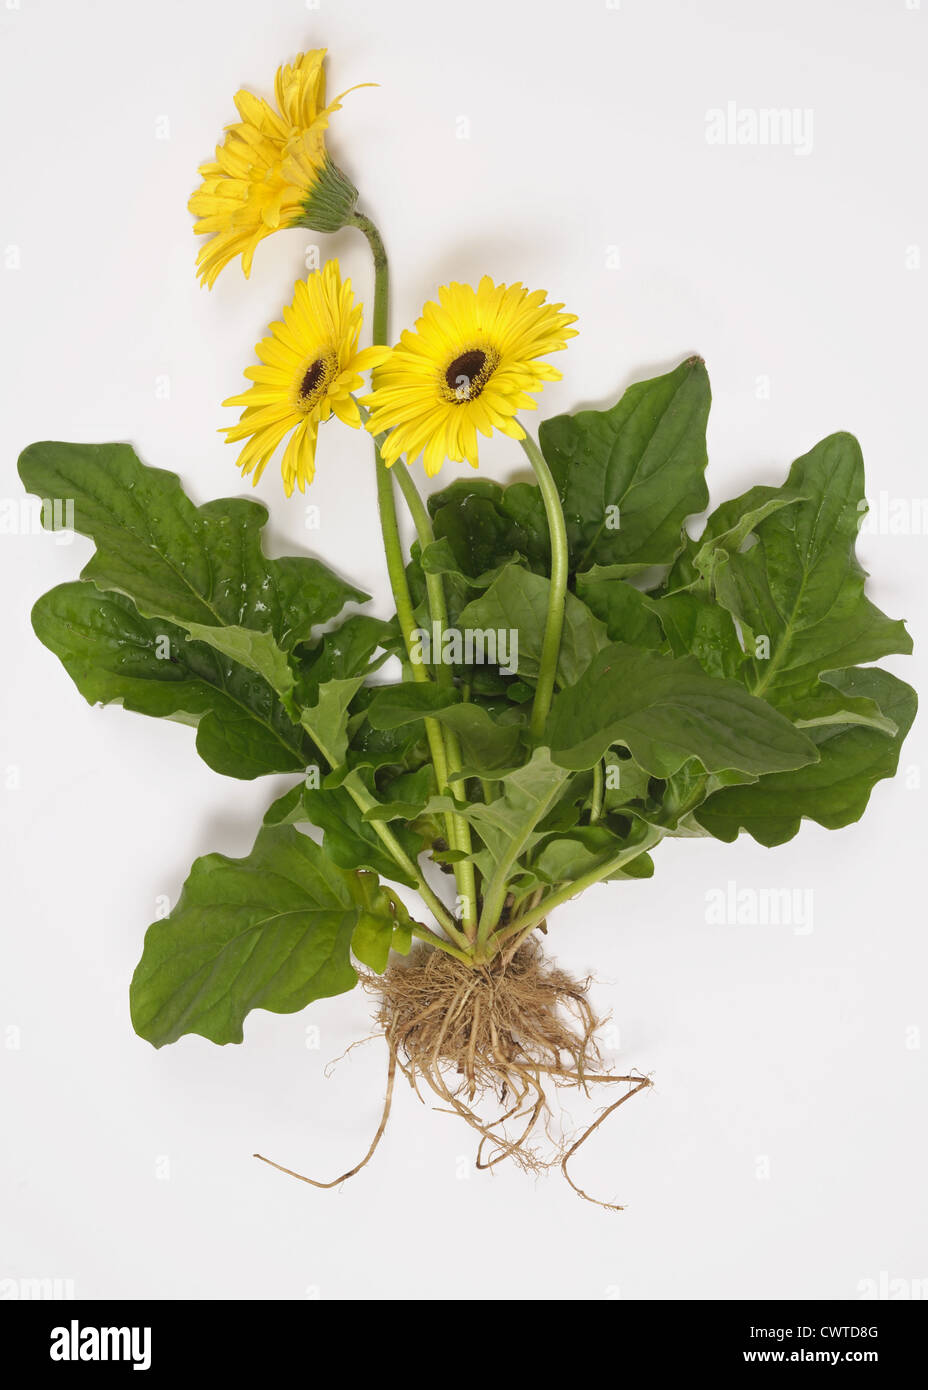 Gerbera planta con flores amarillas, hojas y raíces expuestas para mostrar la estructura de planta Foto de stock